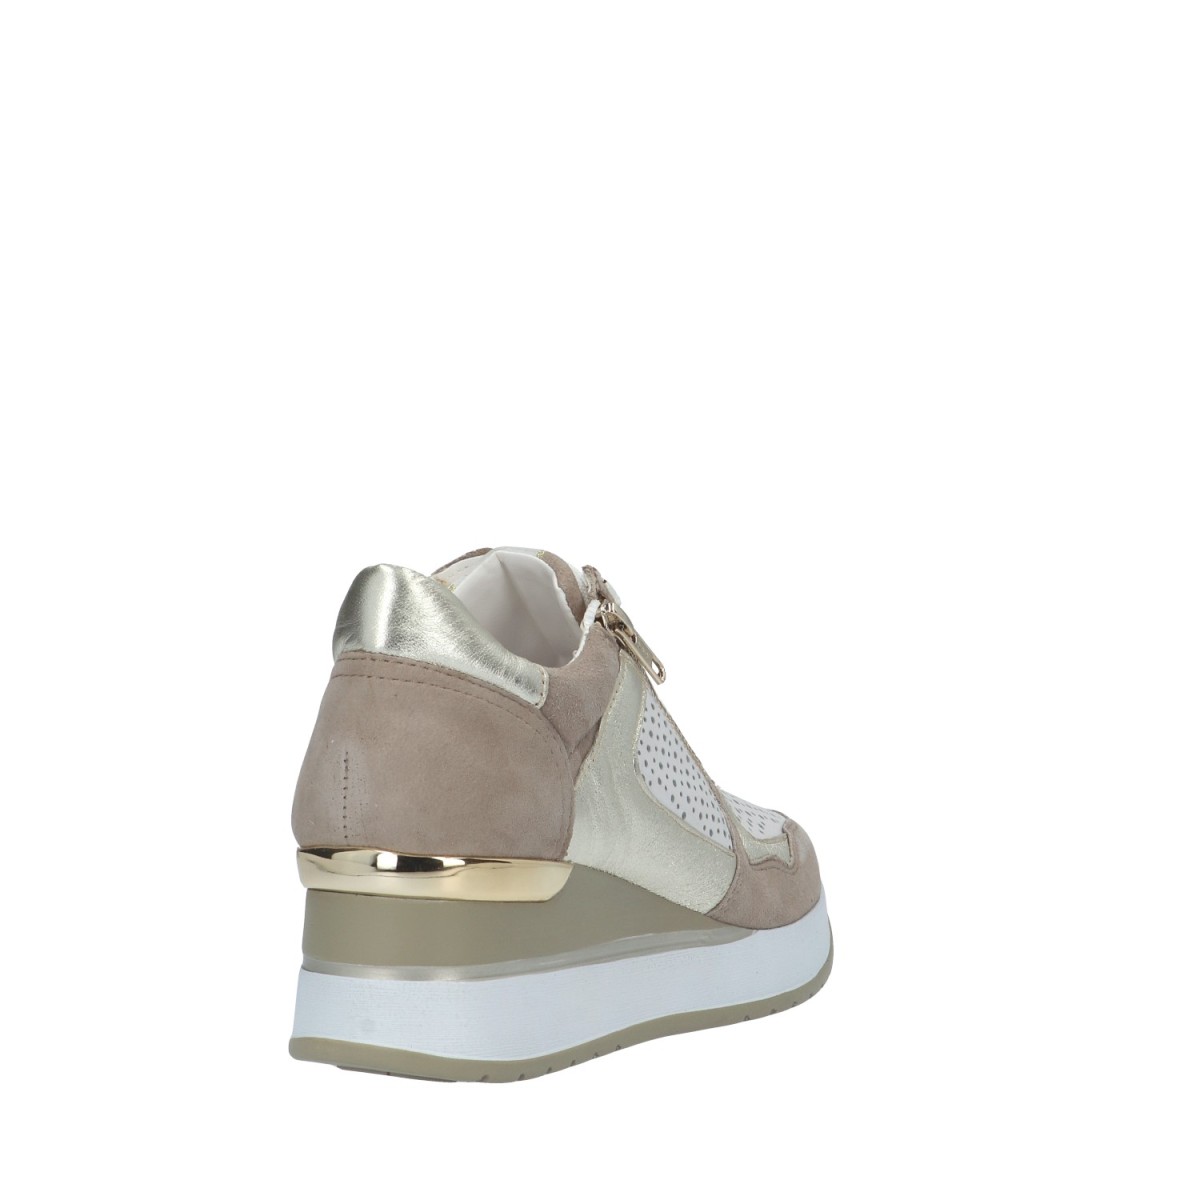 Cinzia soft Sneaker Beige/bianco Zeppa IV2521475 001